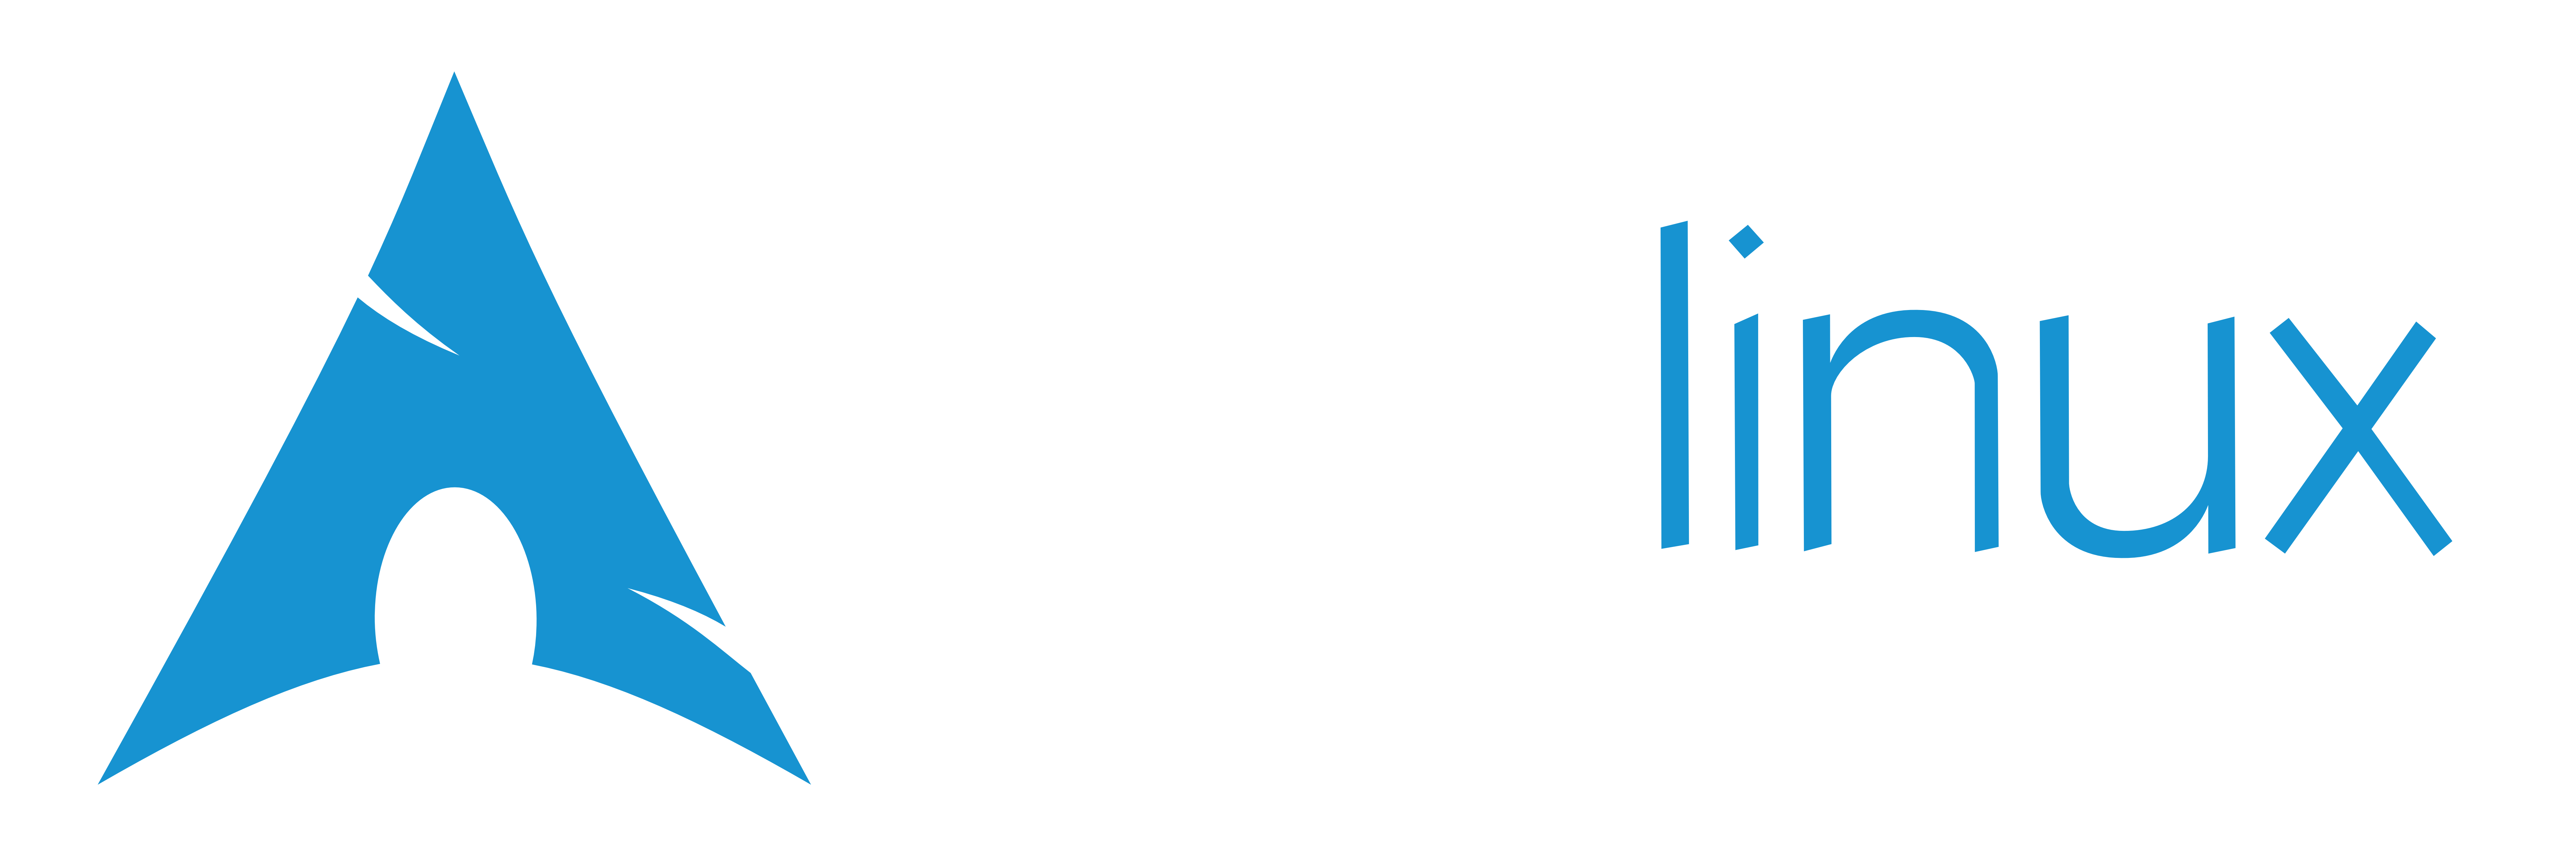 Black Arch Logo - Arch Linux - Artwork